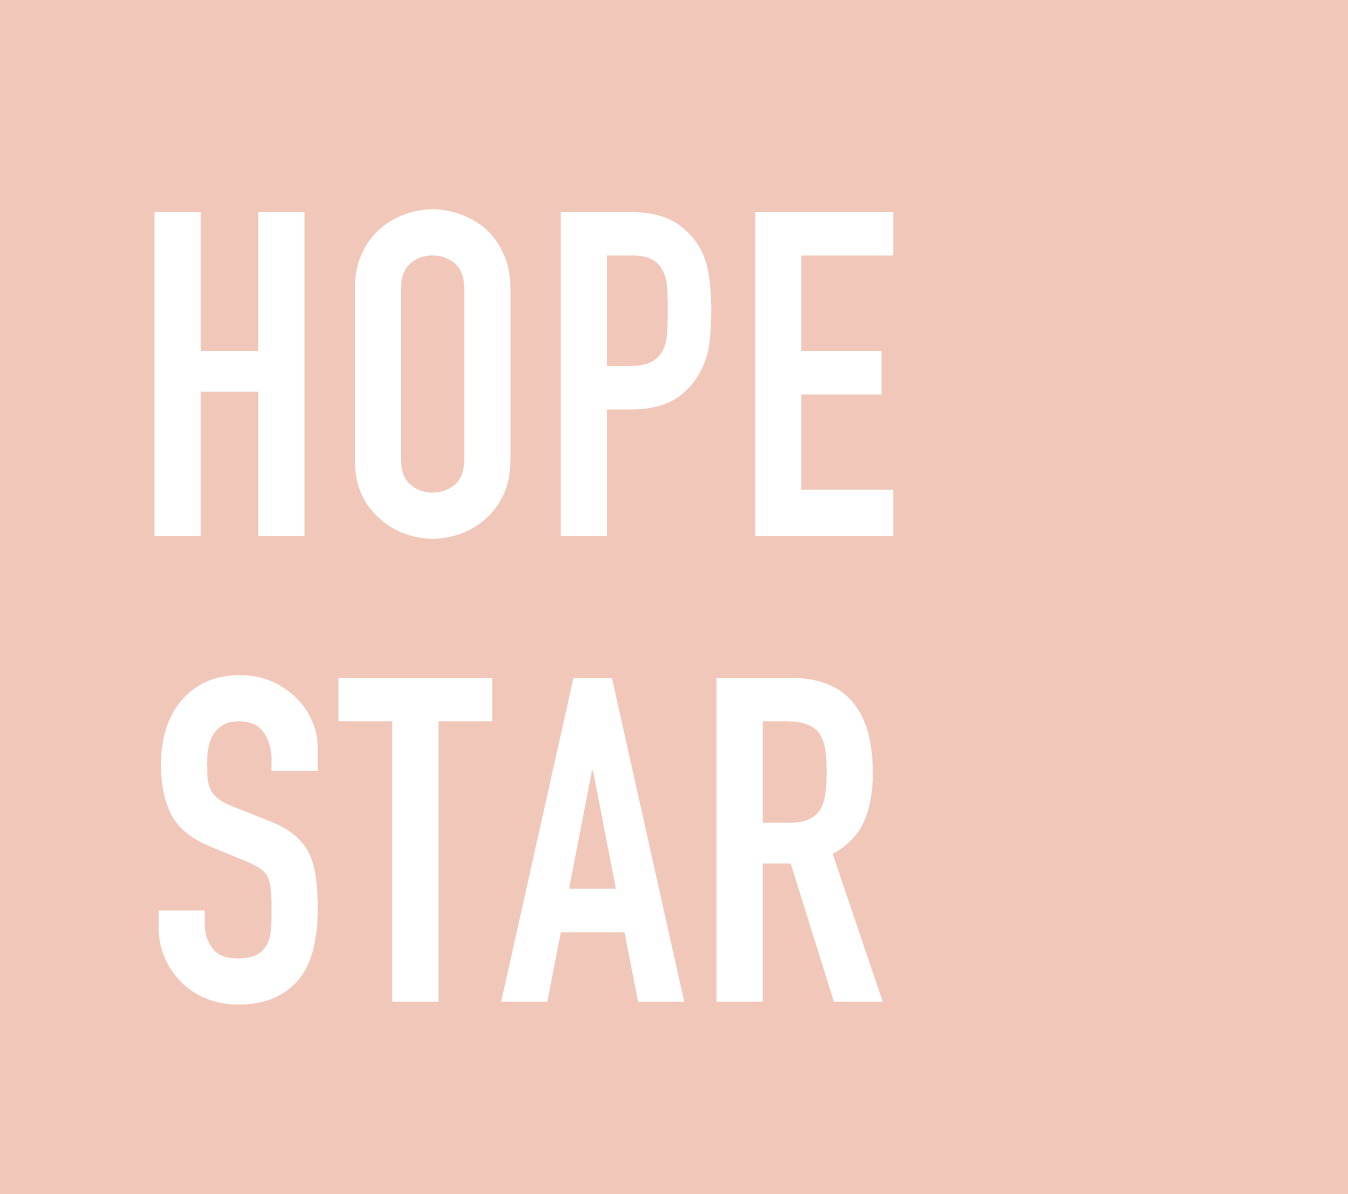 HOPE STAR